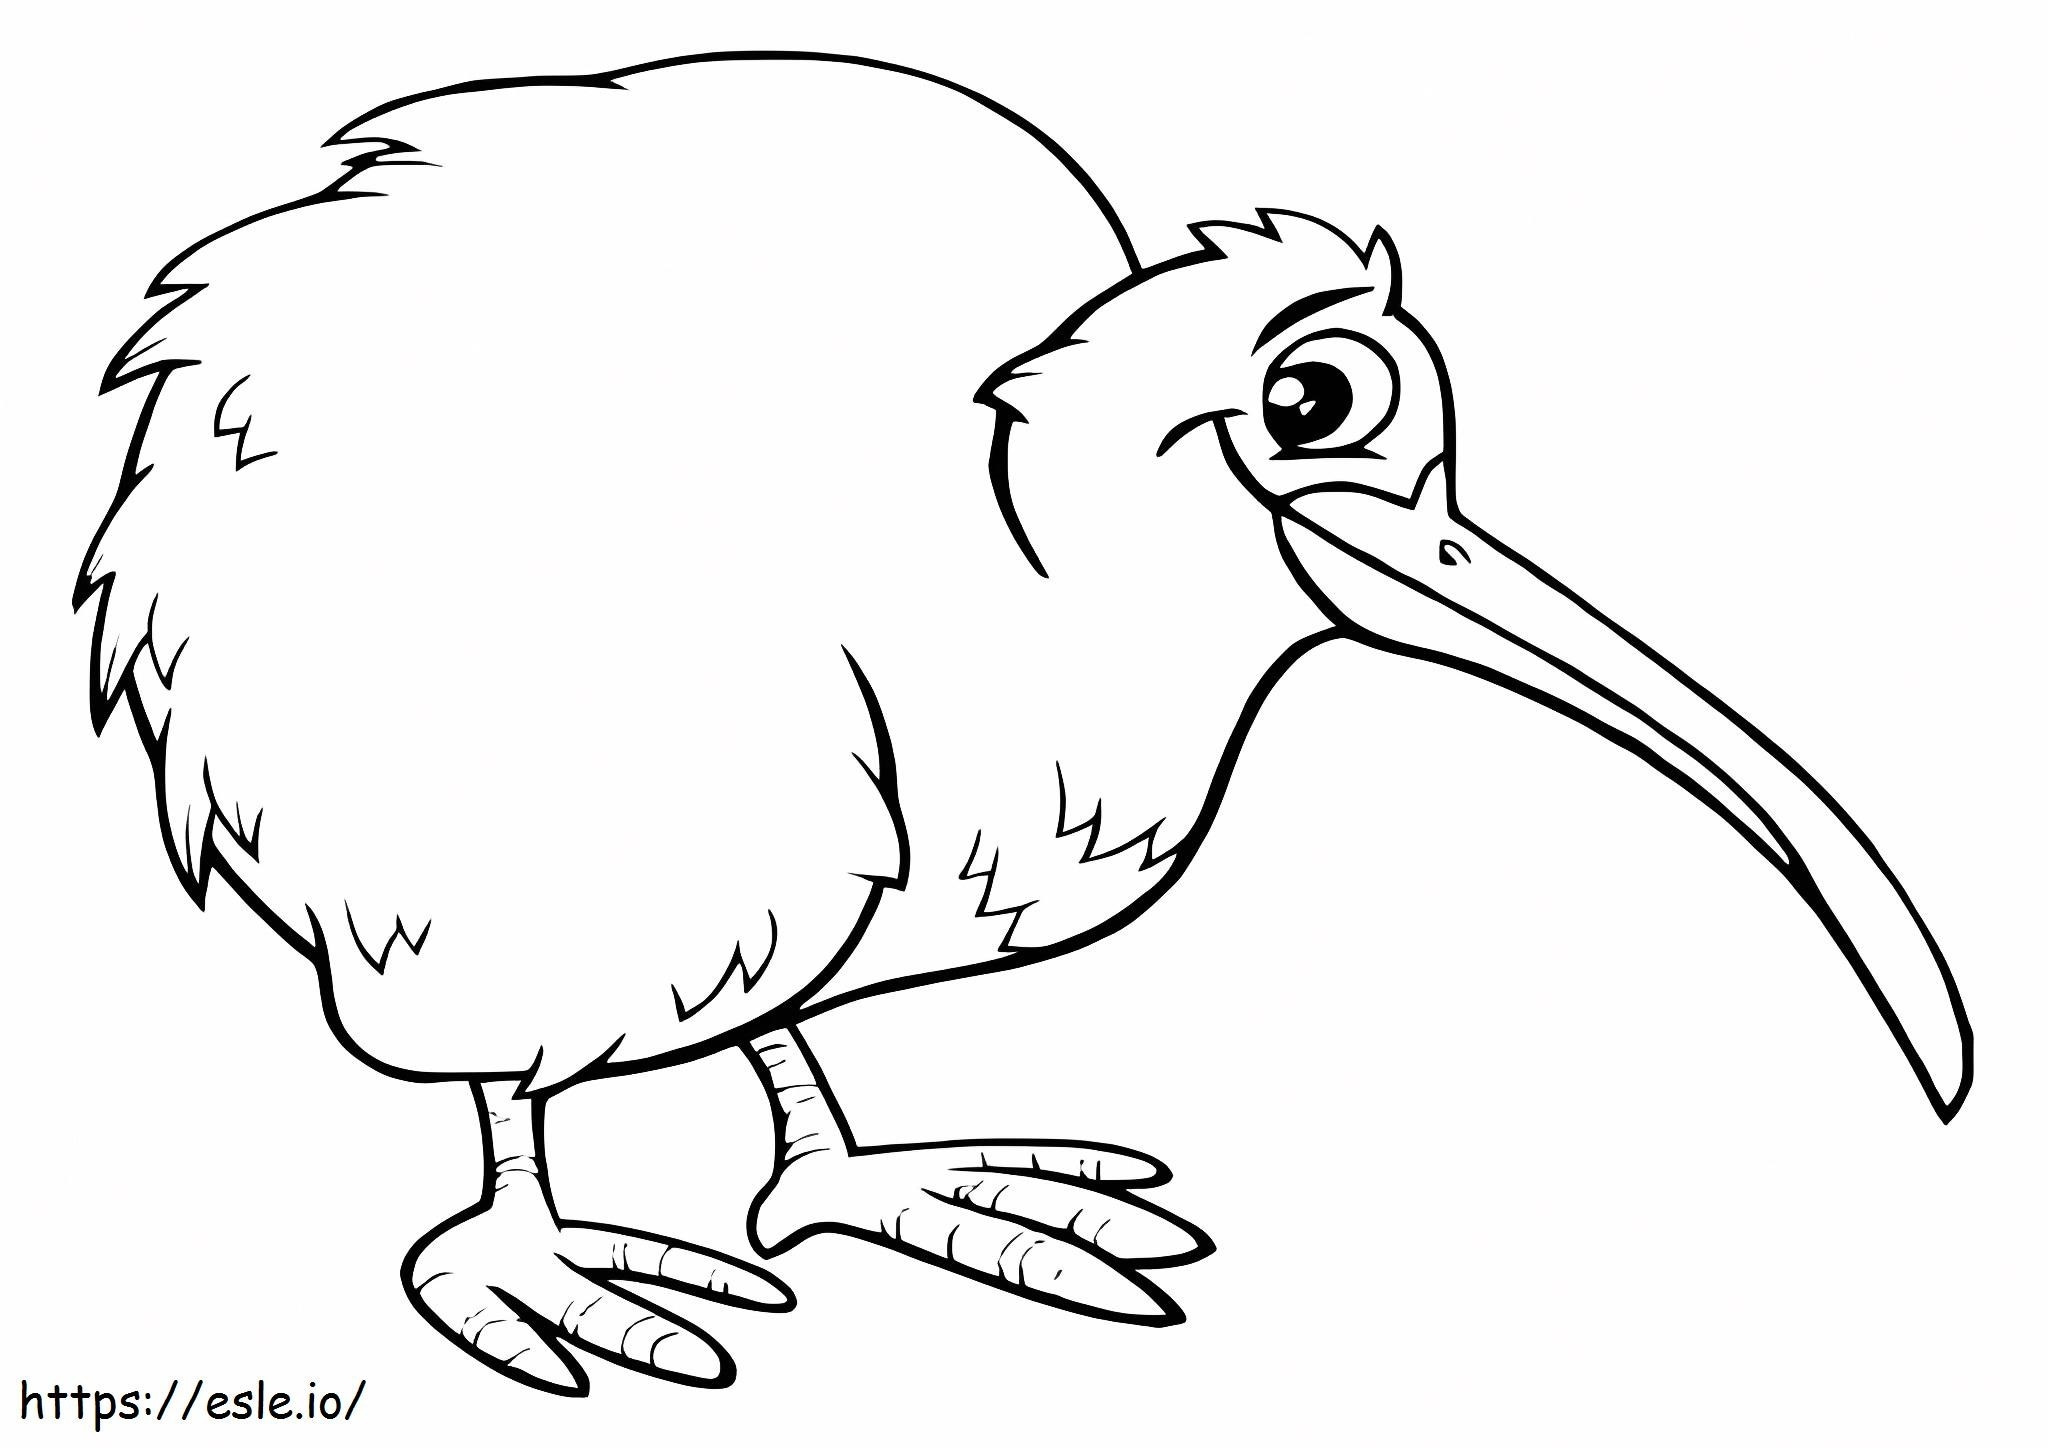 Lachende Kiwivogel kleurplaat kleurplaat